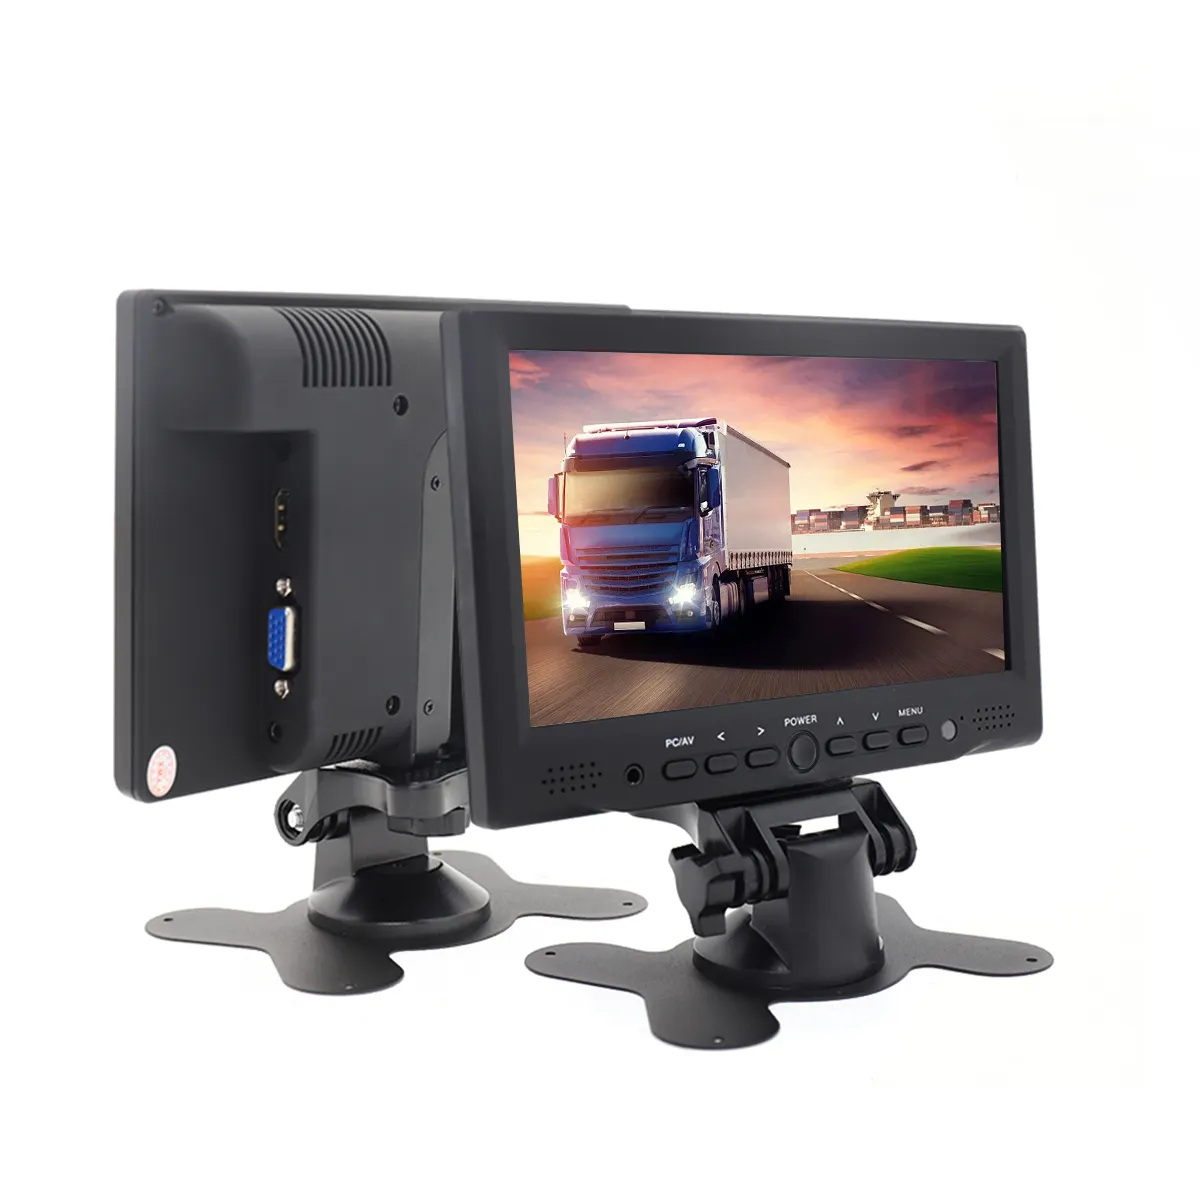 Moniteur de voiture TFT LCD de 7 pouces avec caméra de recul Camions Bus Parking Système d'aide à la marche arrière